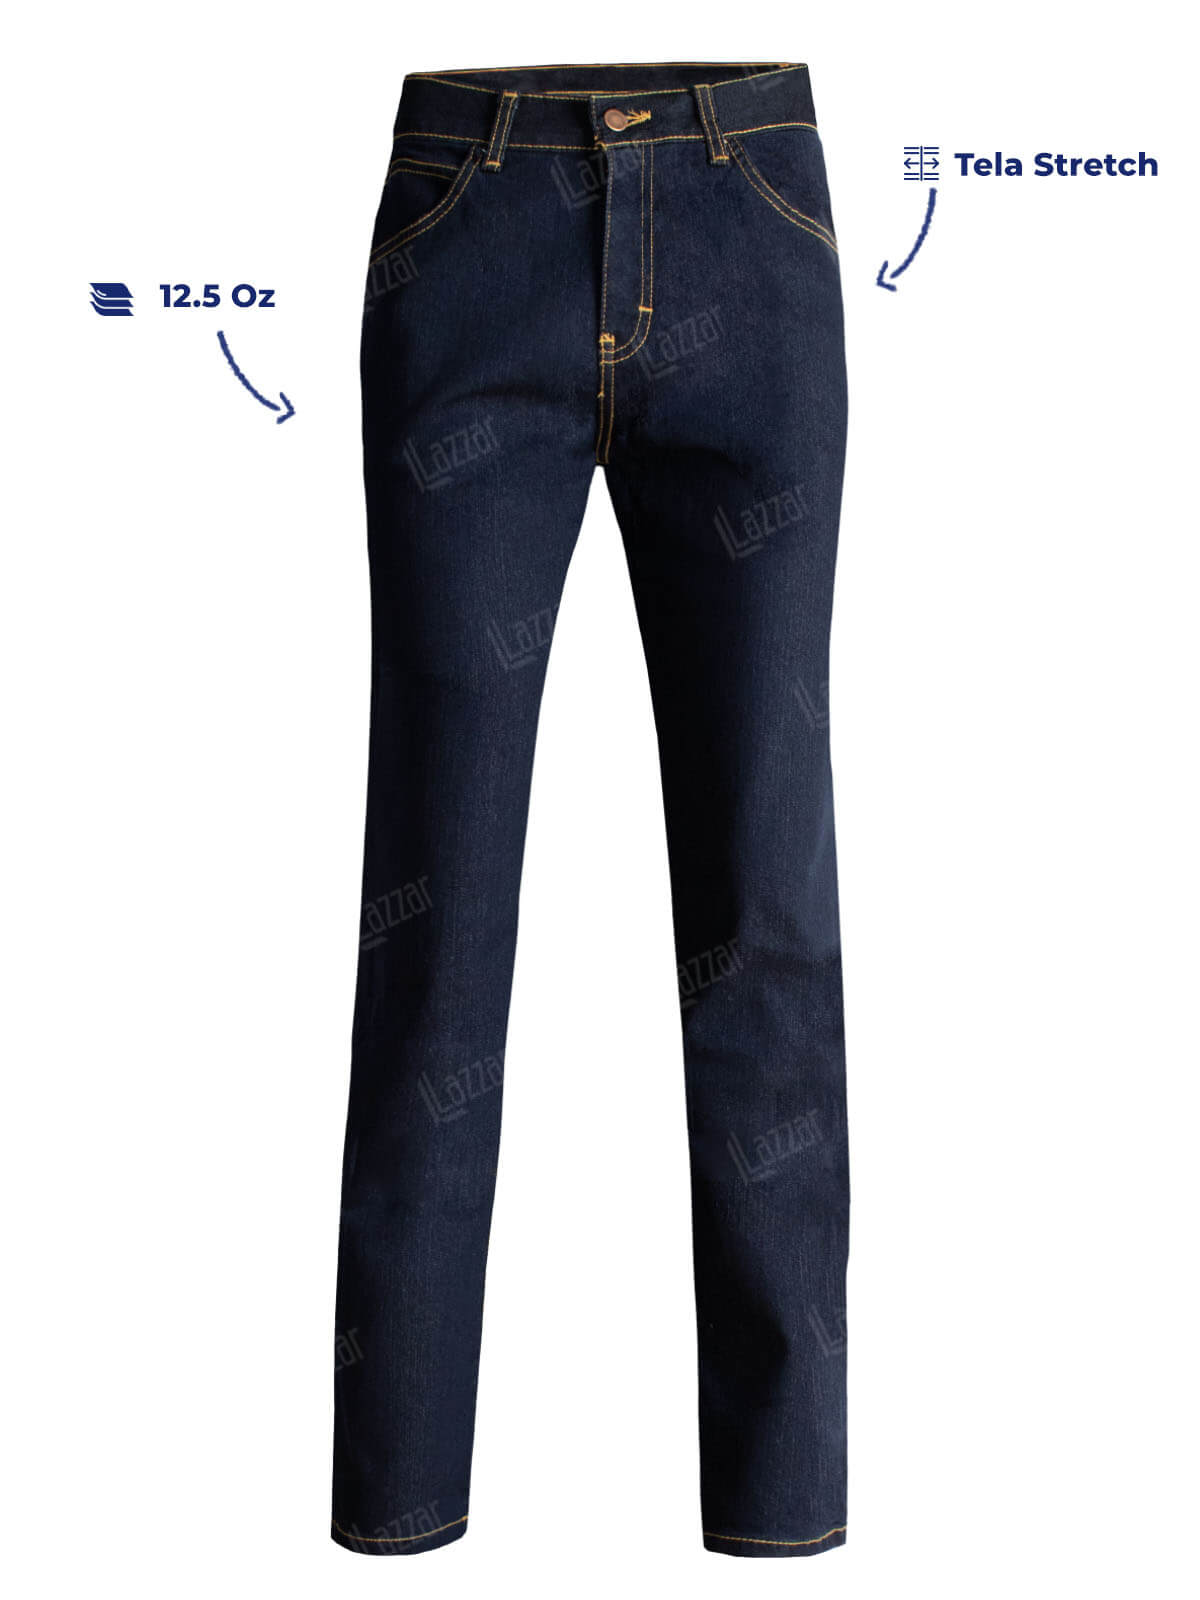 Pantalones industriales 14 Onzas , color azul oscuro tienda de epp